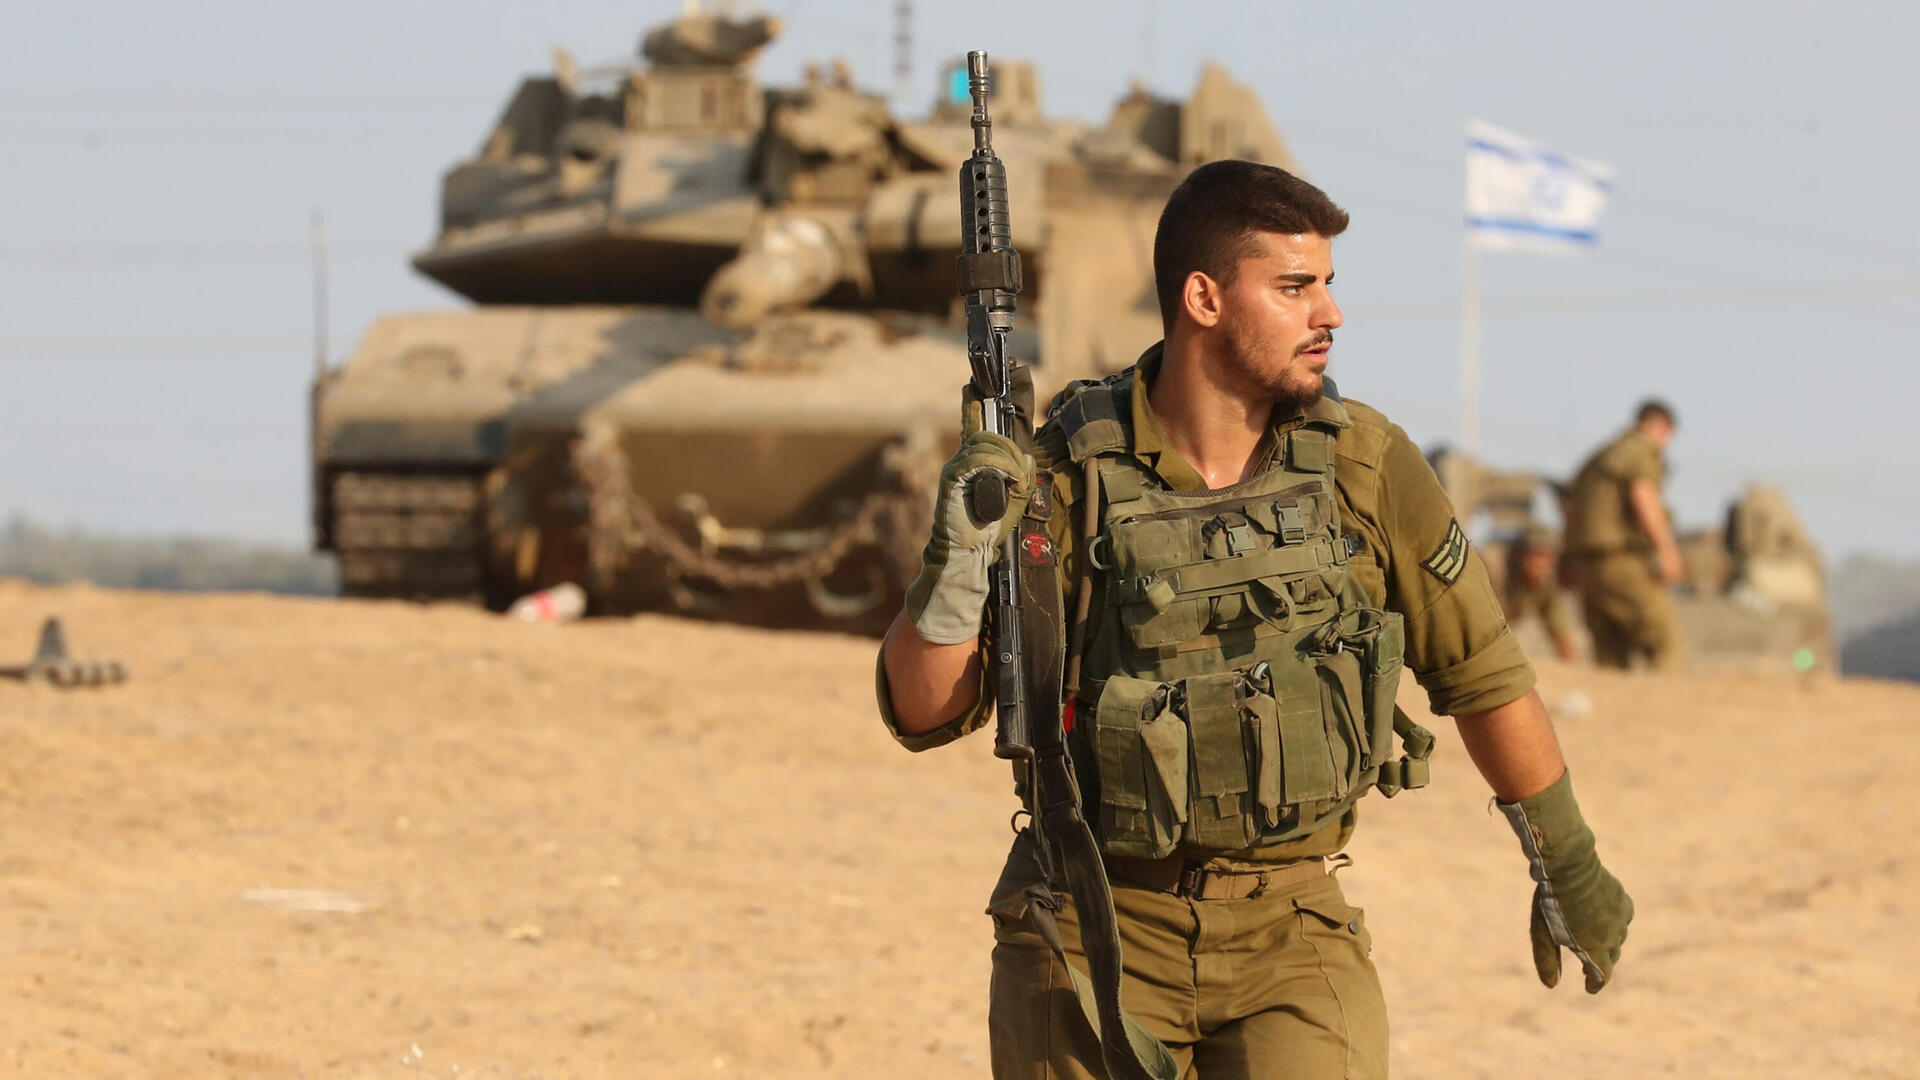 מלחמת עזה כוחות צה"ל חיילים טנקים תותחנים ב עוטף עזה חרבות ברזל 